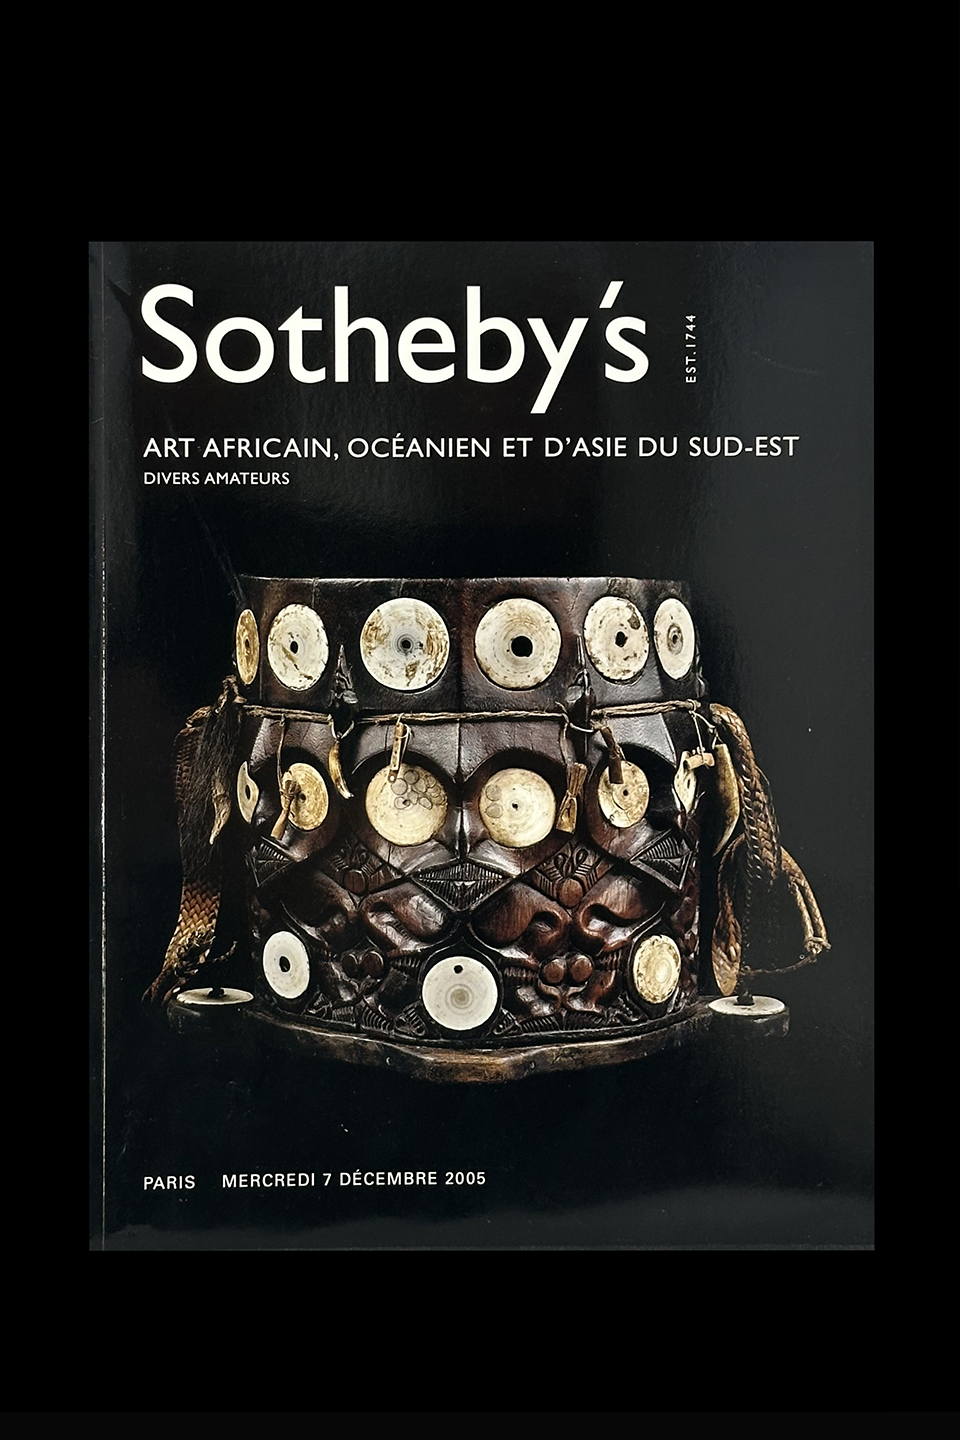 Sotheby's - Art Africain, Ocanien et d'Asie du Sud-Est - Paris, December, 2005